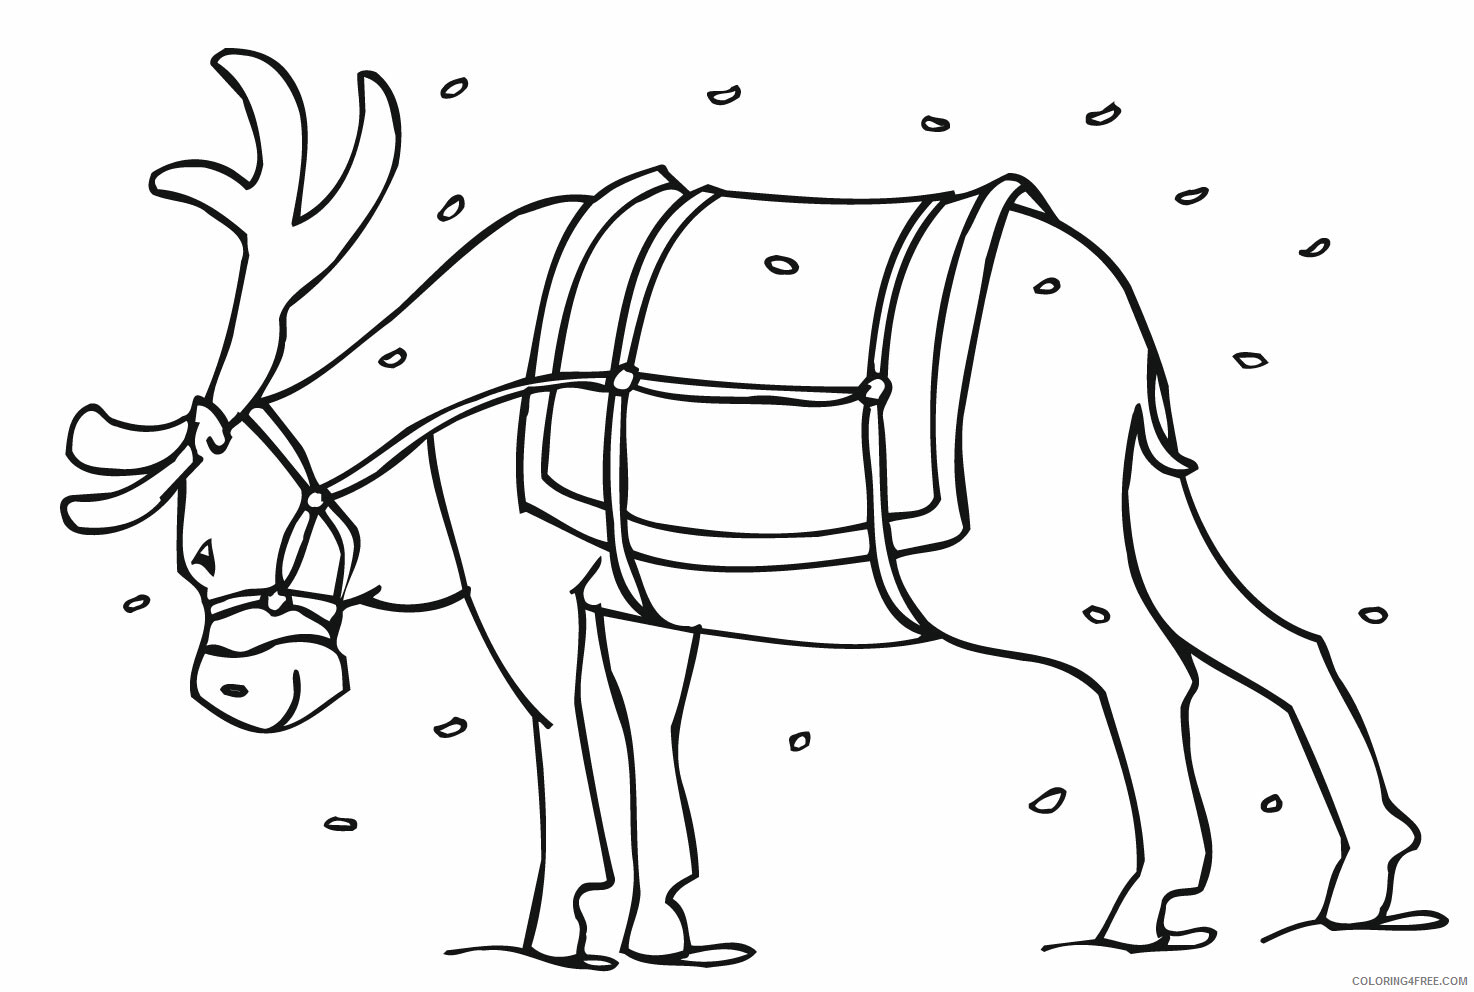 Reindeer Coloring Pages Animal Printable Sheets Free Reindeer 2021 4280 Coloring4free